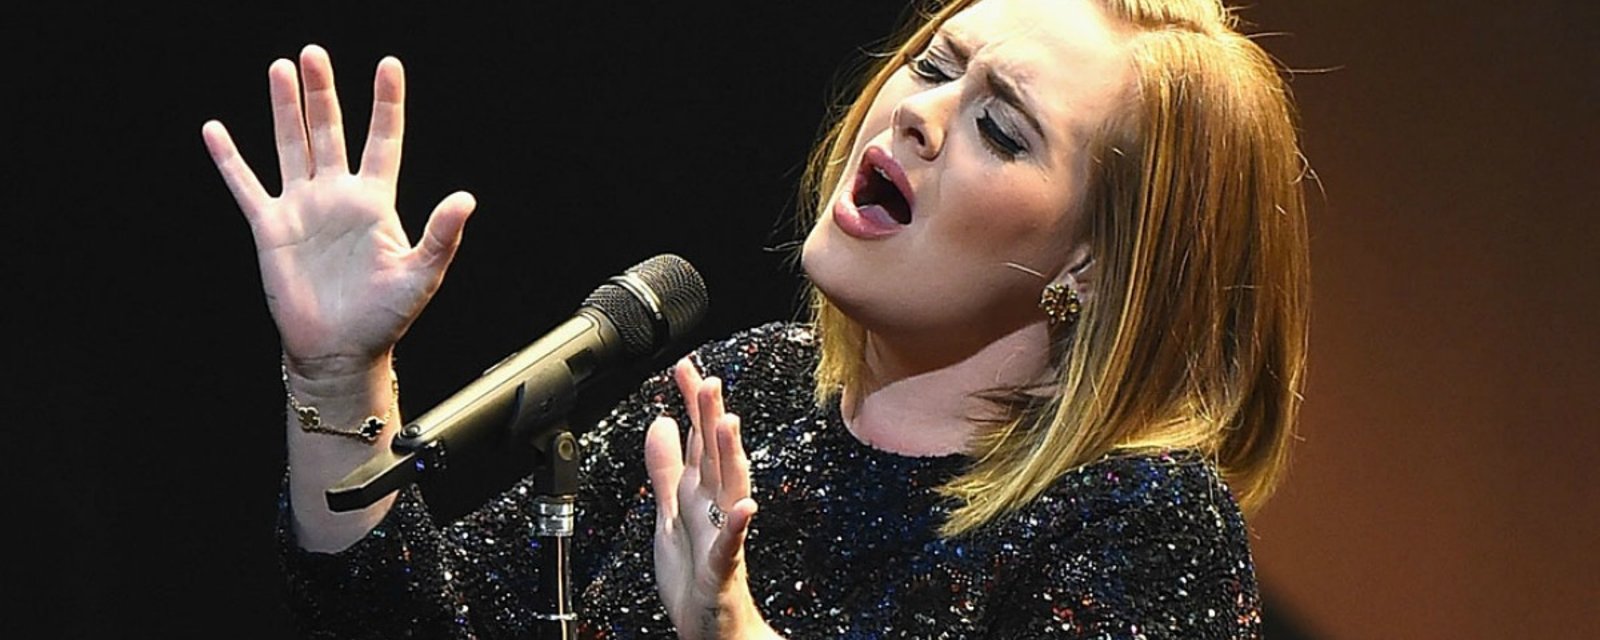 Vidéo – Adele rend un vibrant hommage à Amy Winehouse durant un spectacle